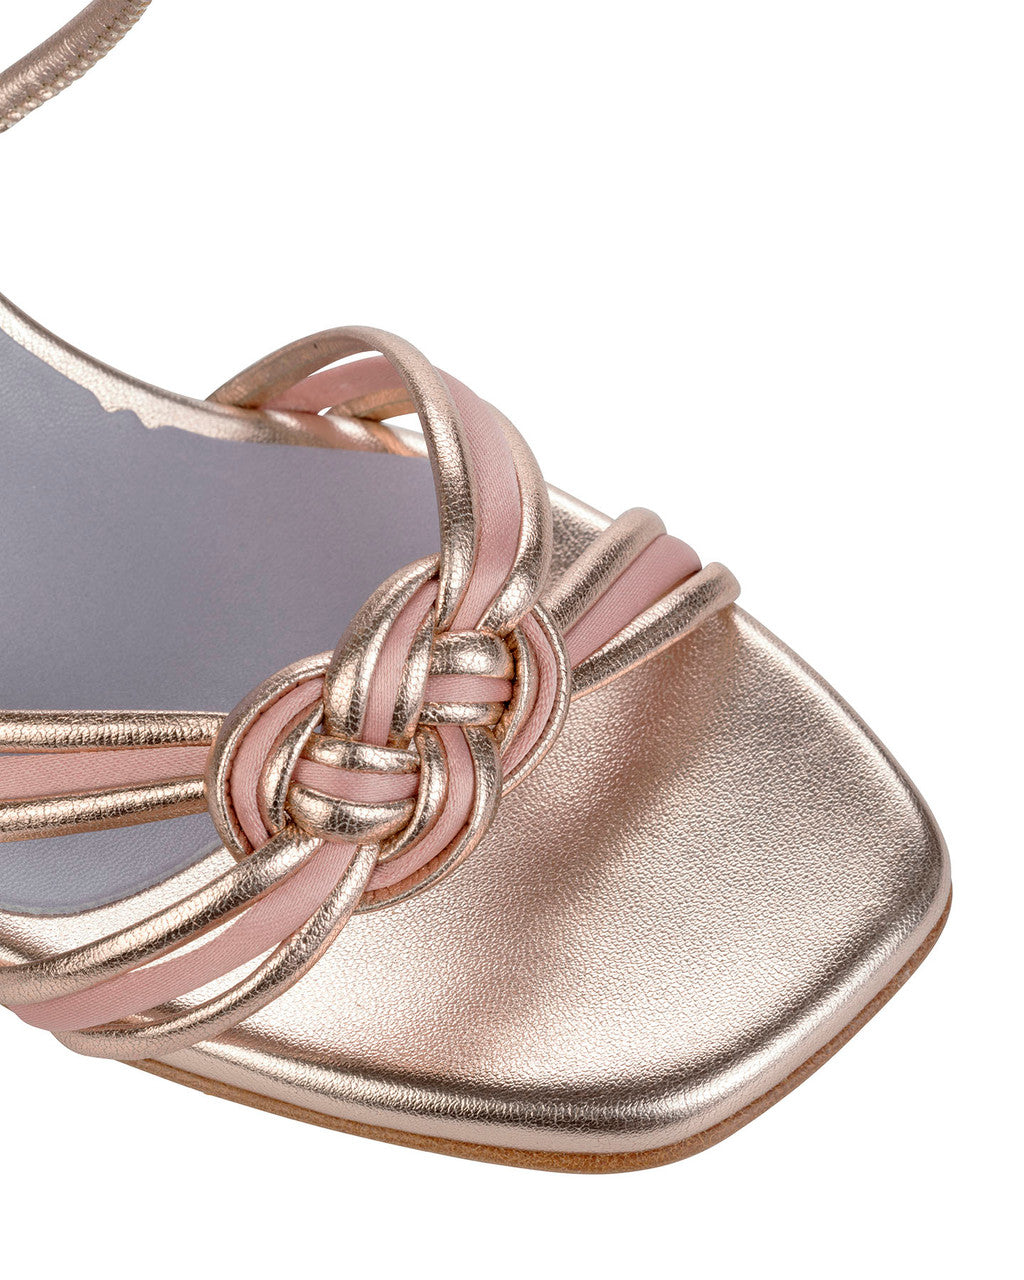 Bianca Buccheri Delfina Rose Gold Sandals